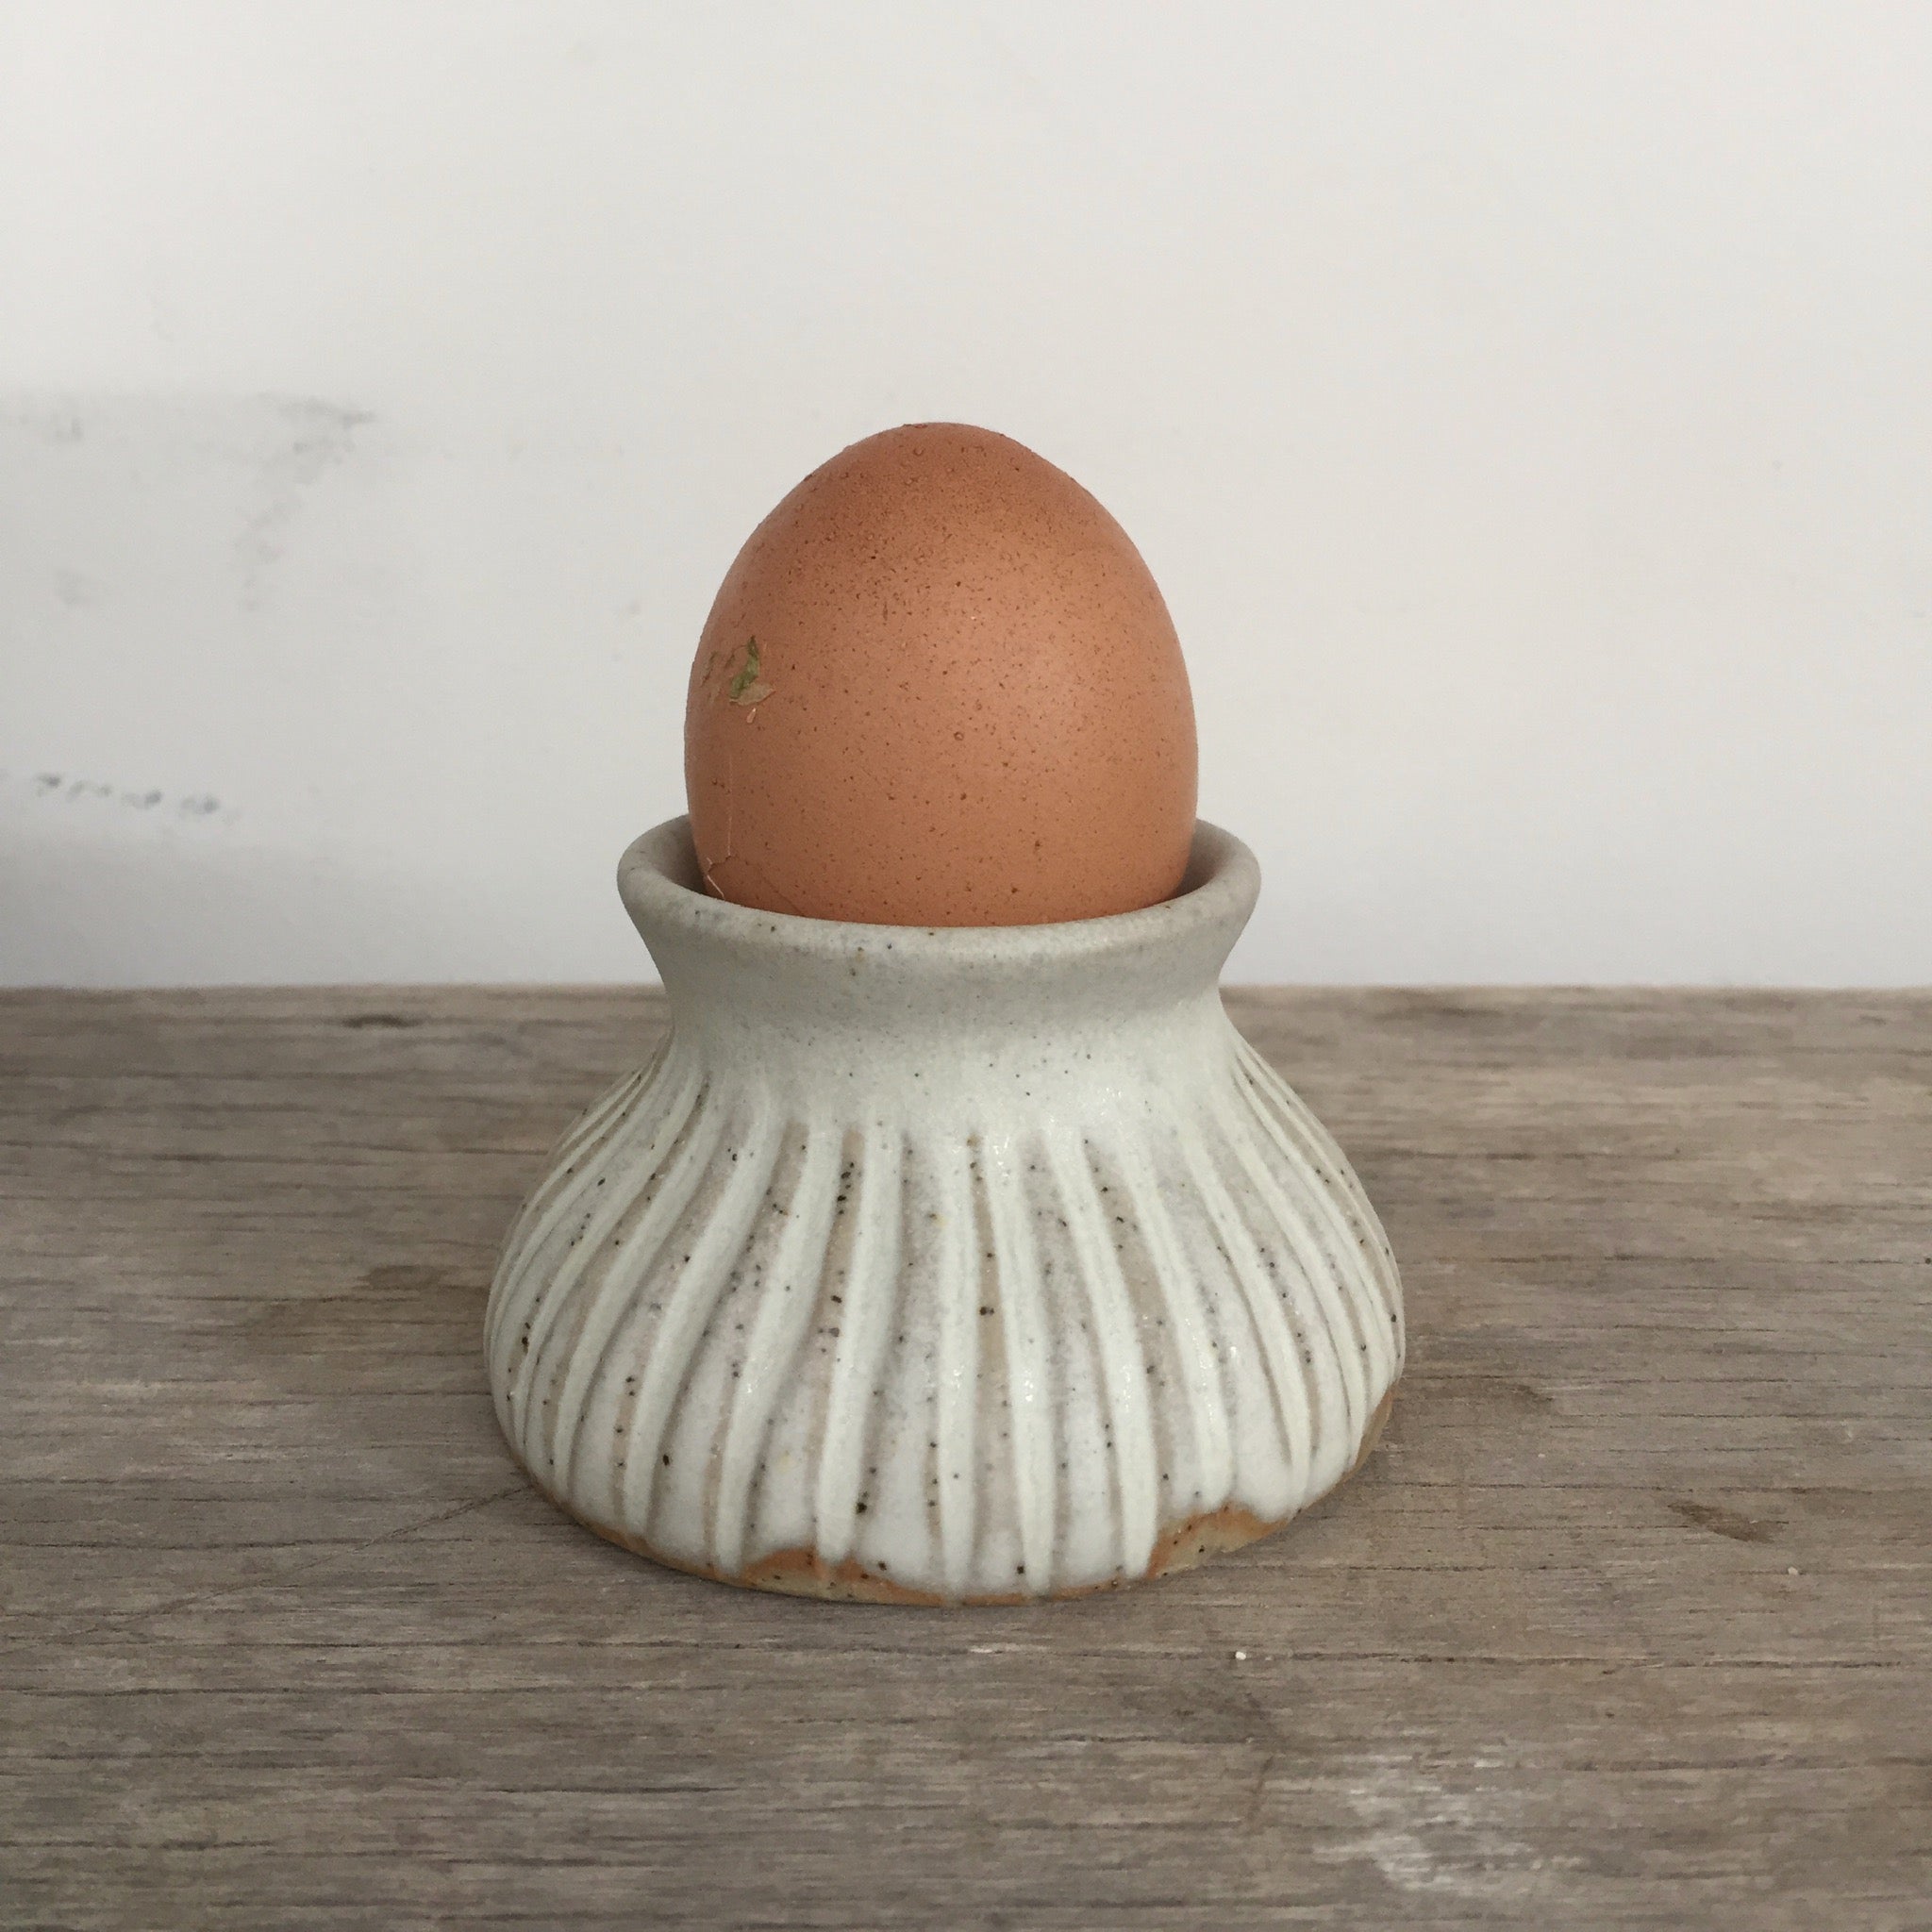 The Tudor Egg Cup